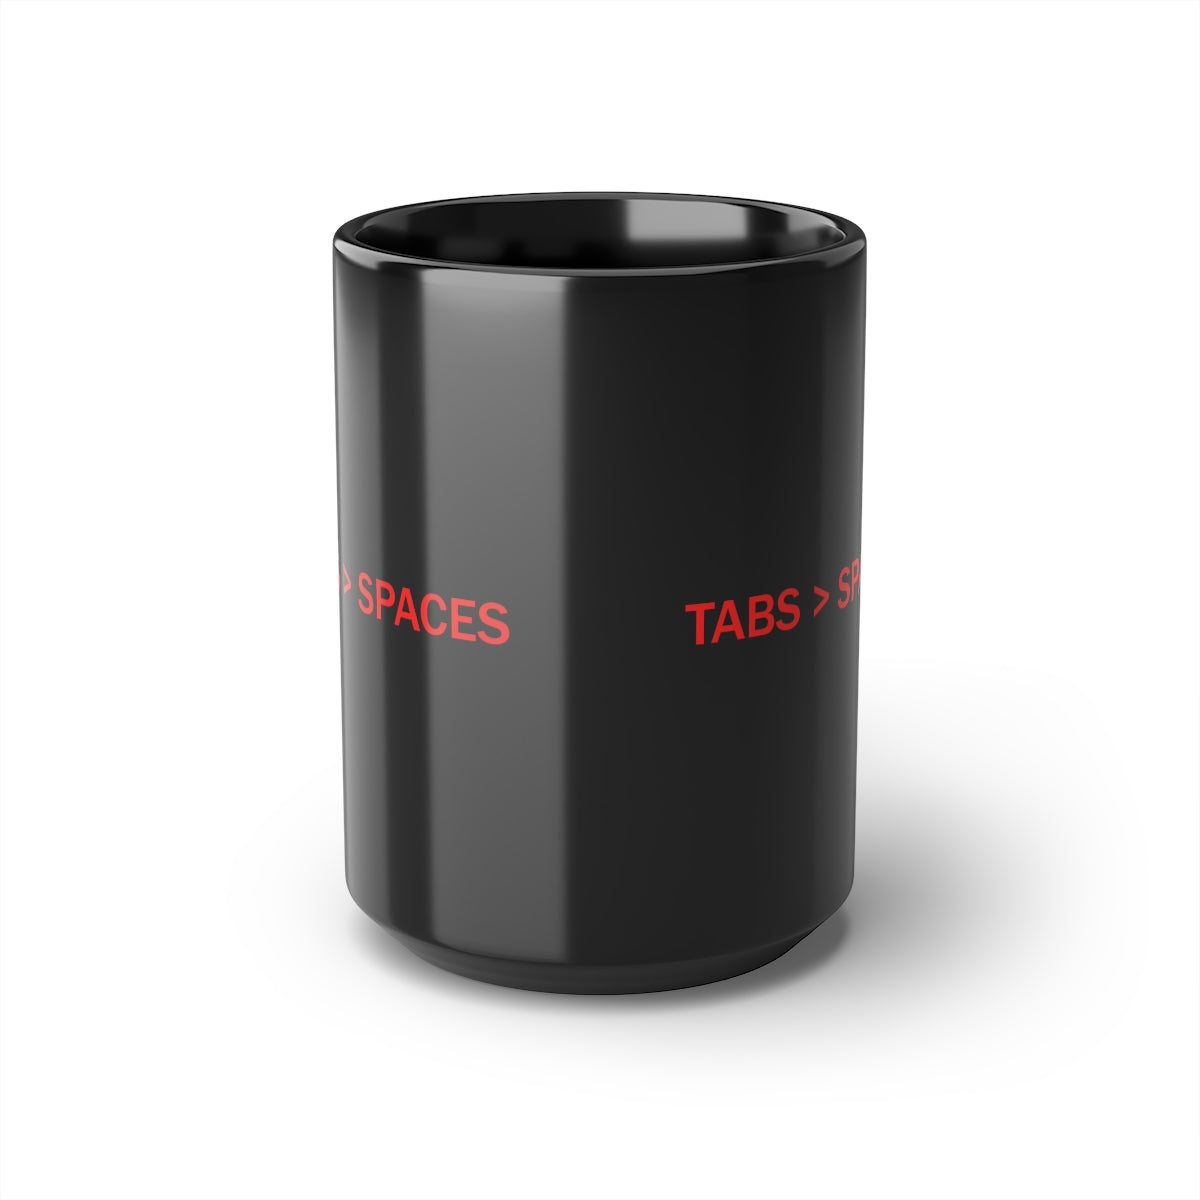 TABS > SPACES - Black Mug, 15oz